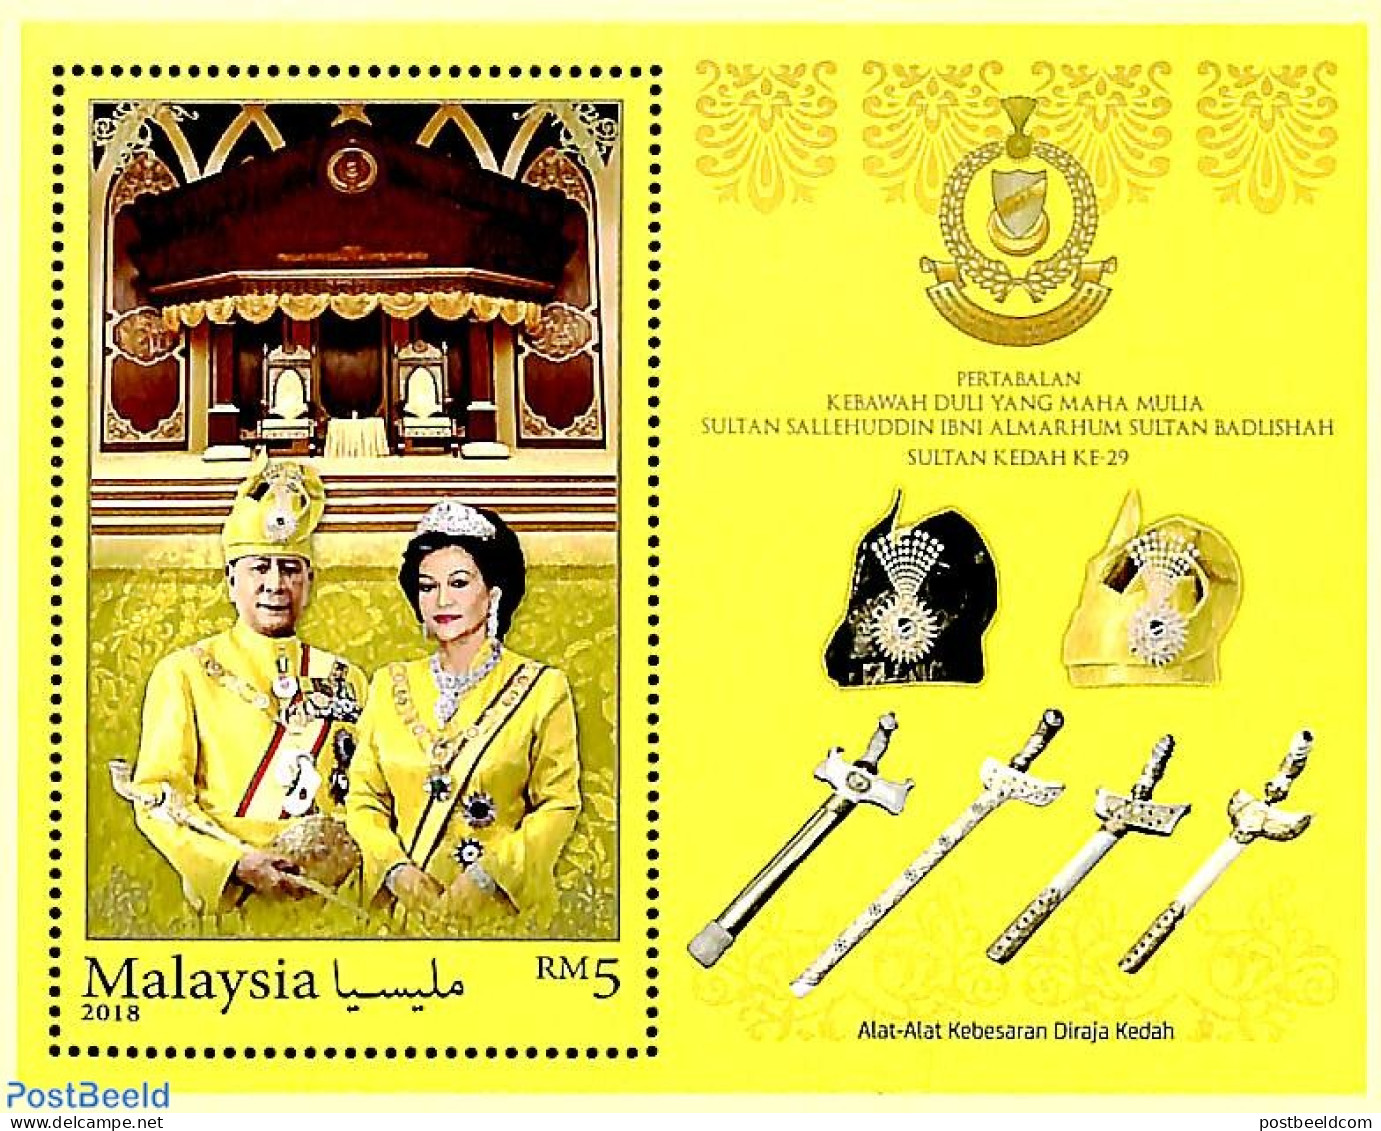 Malaysia 2018 Pertabalan Kebawah... S/s, Mint NH, History - Kings & Queens (Royalty) - Familles Royales